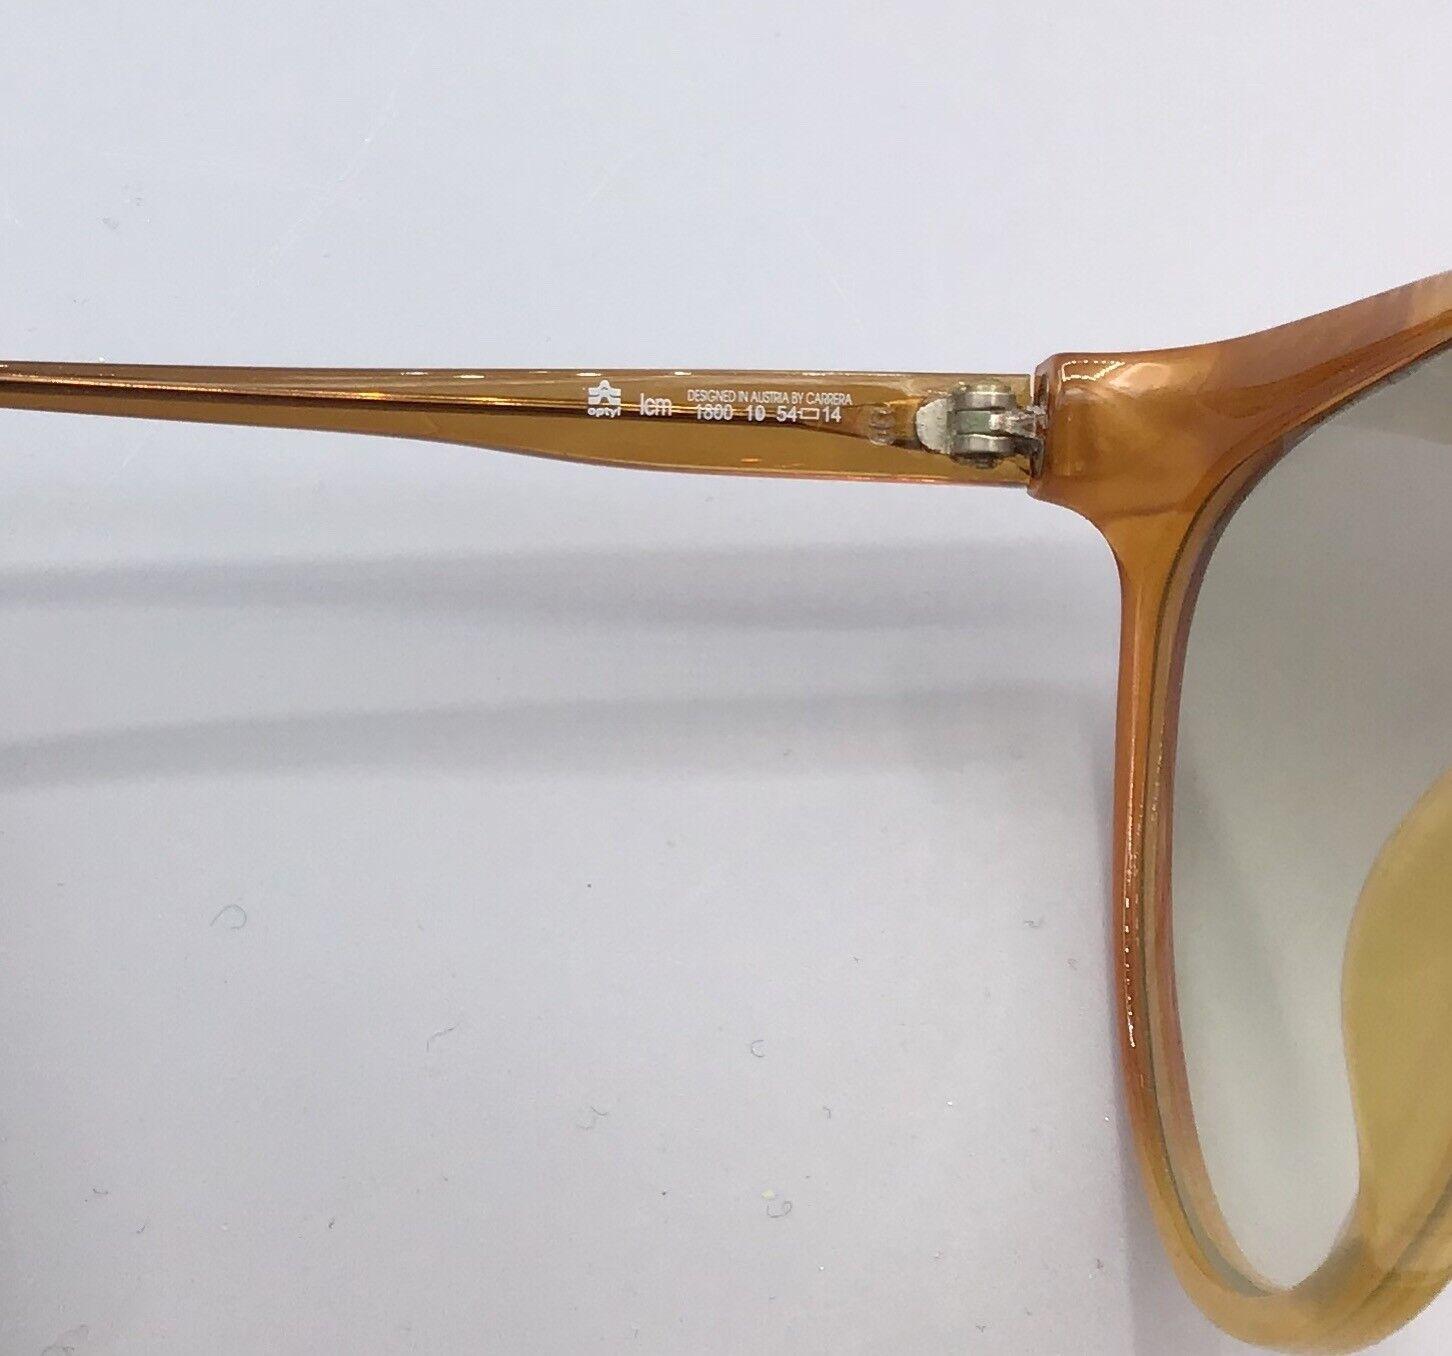 occhiale vintage ViennaLine Sunglasses modello 1800 sonnenbrillen lunettes gafas de sol